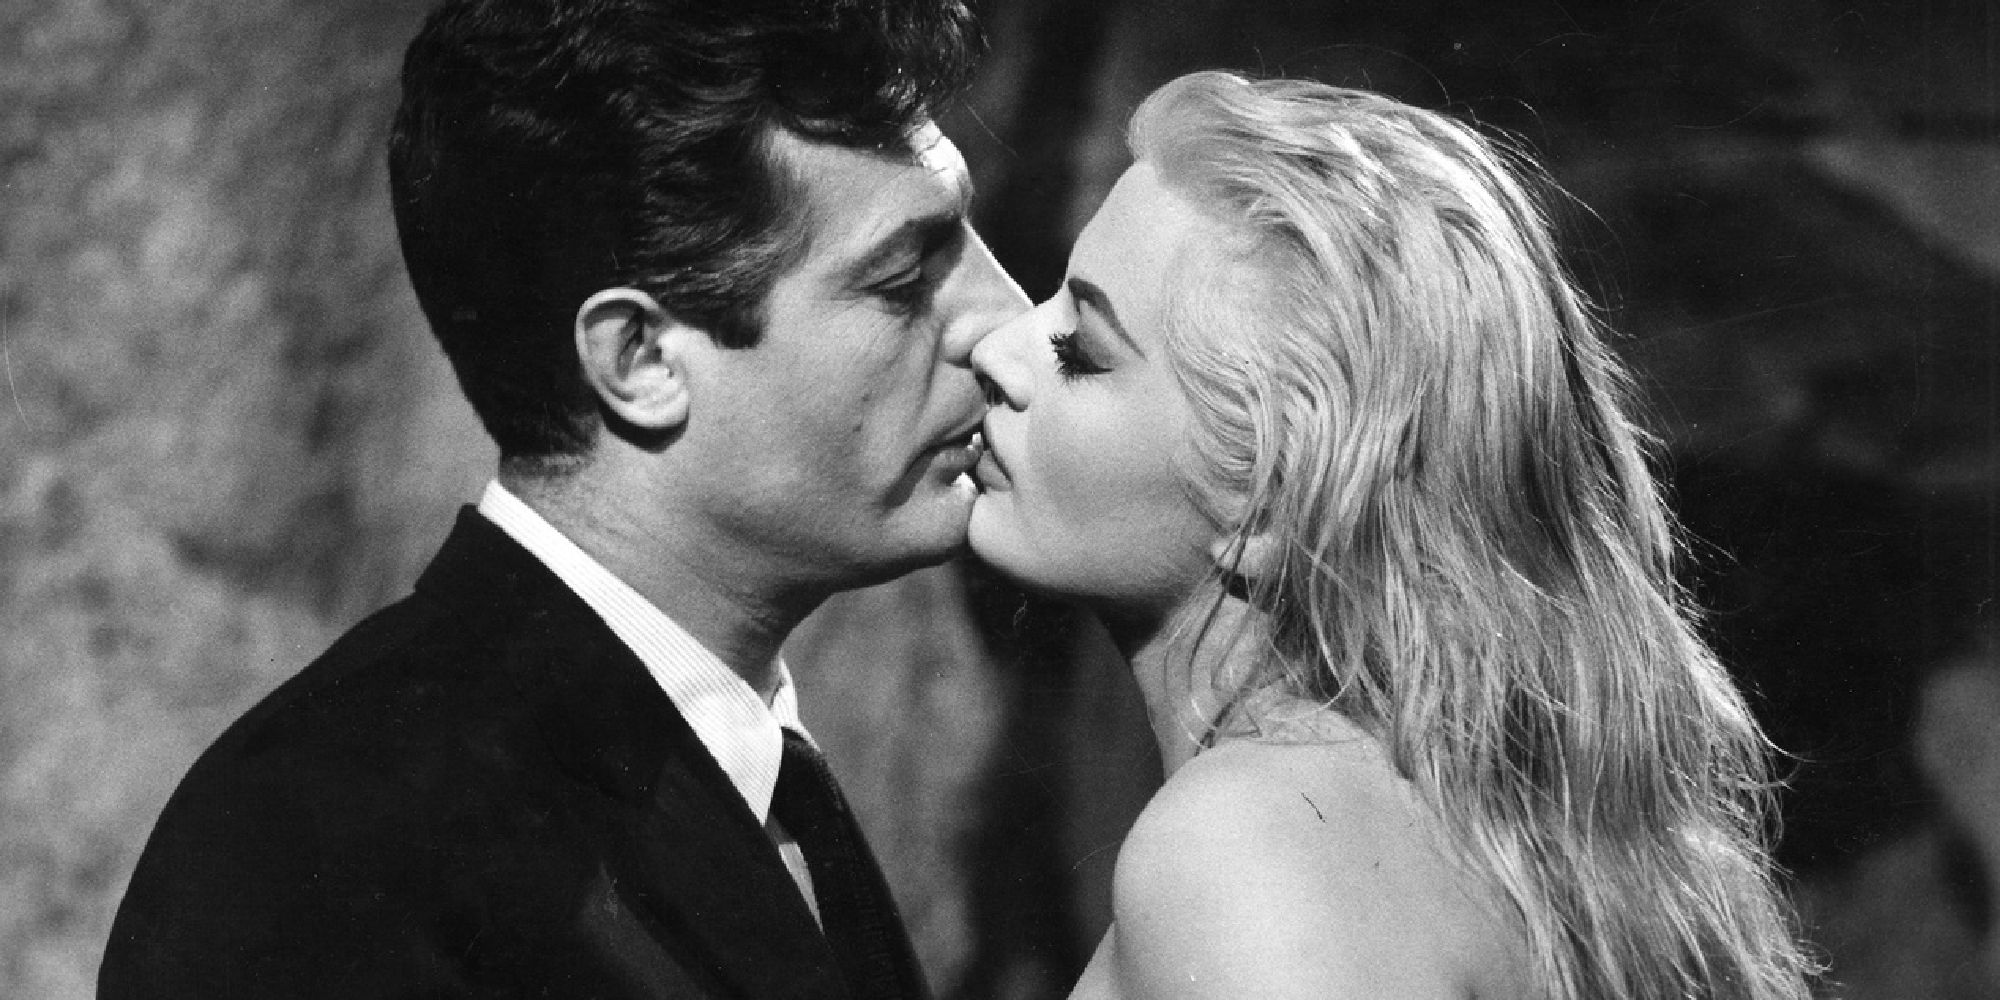 Marcello Mastroianni and Anita Ekberg kissing in 'La Dolce Vita'